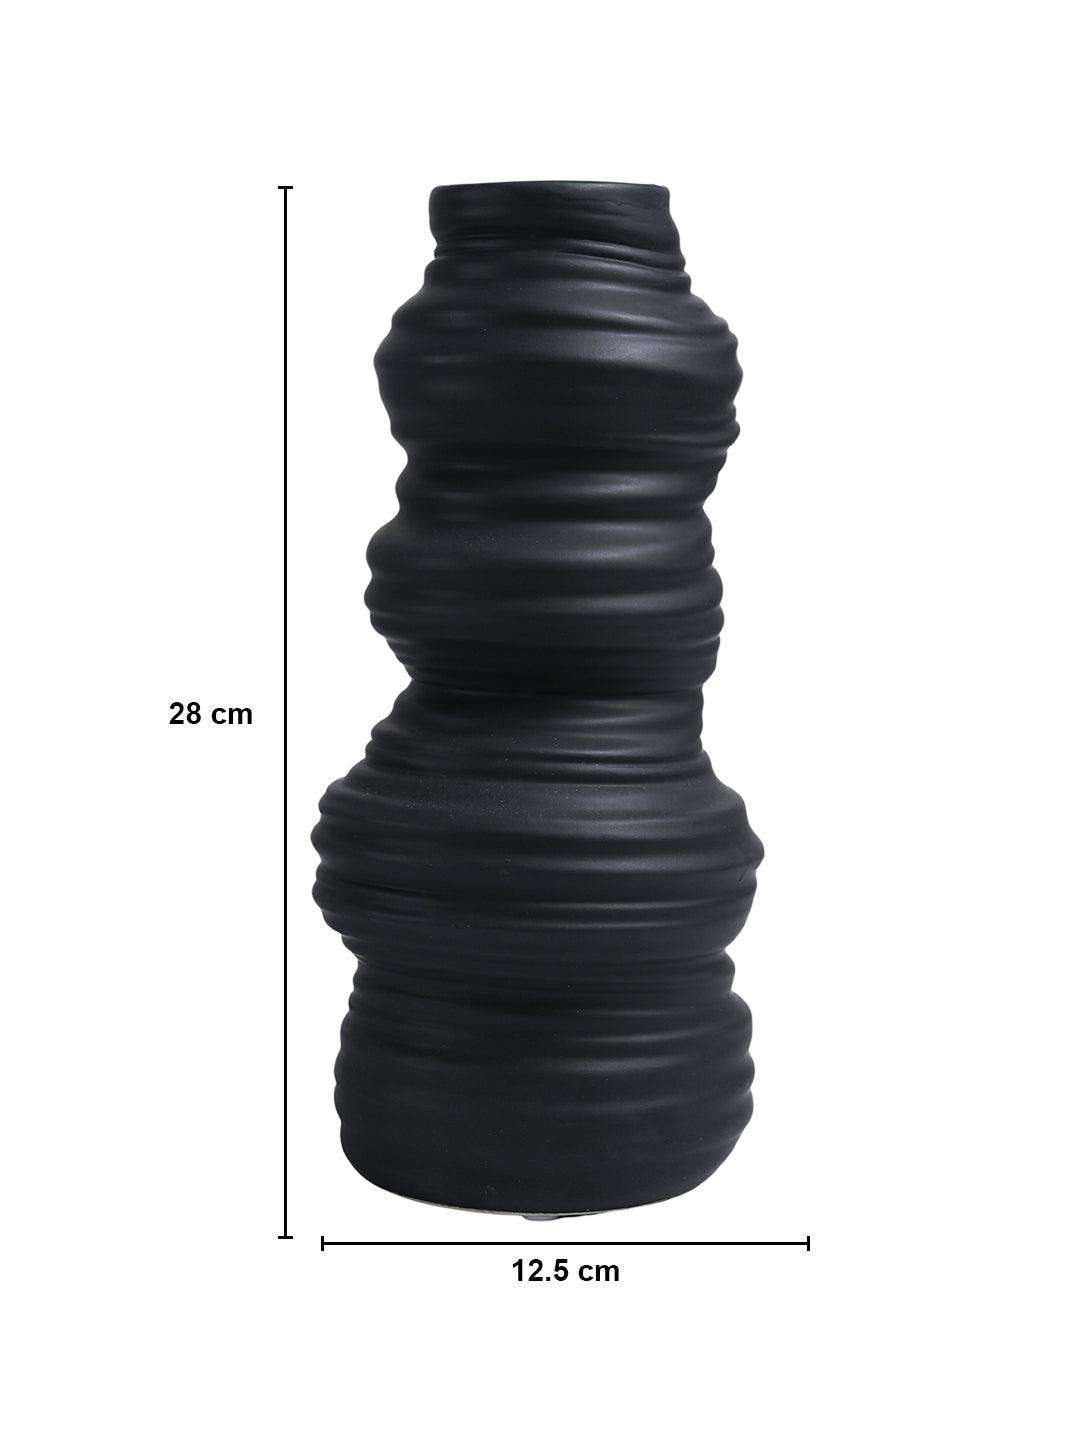 VON CASA Ceramic Black Vase - MARKET99